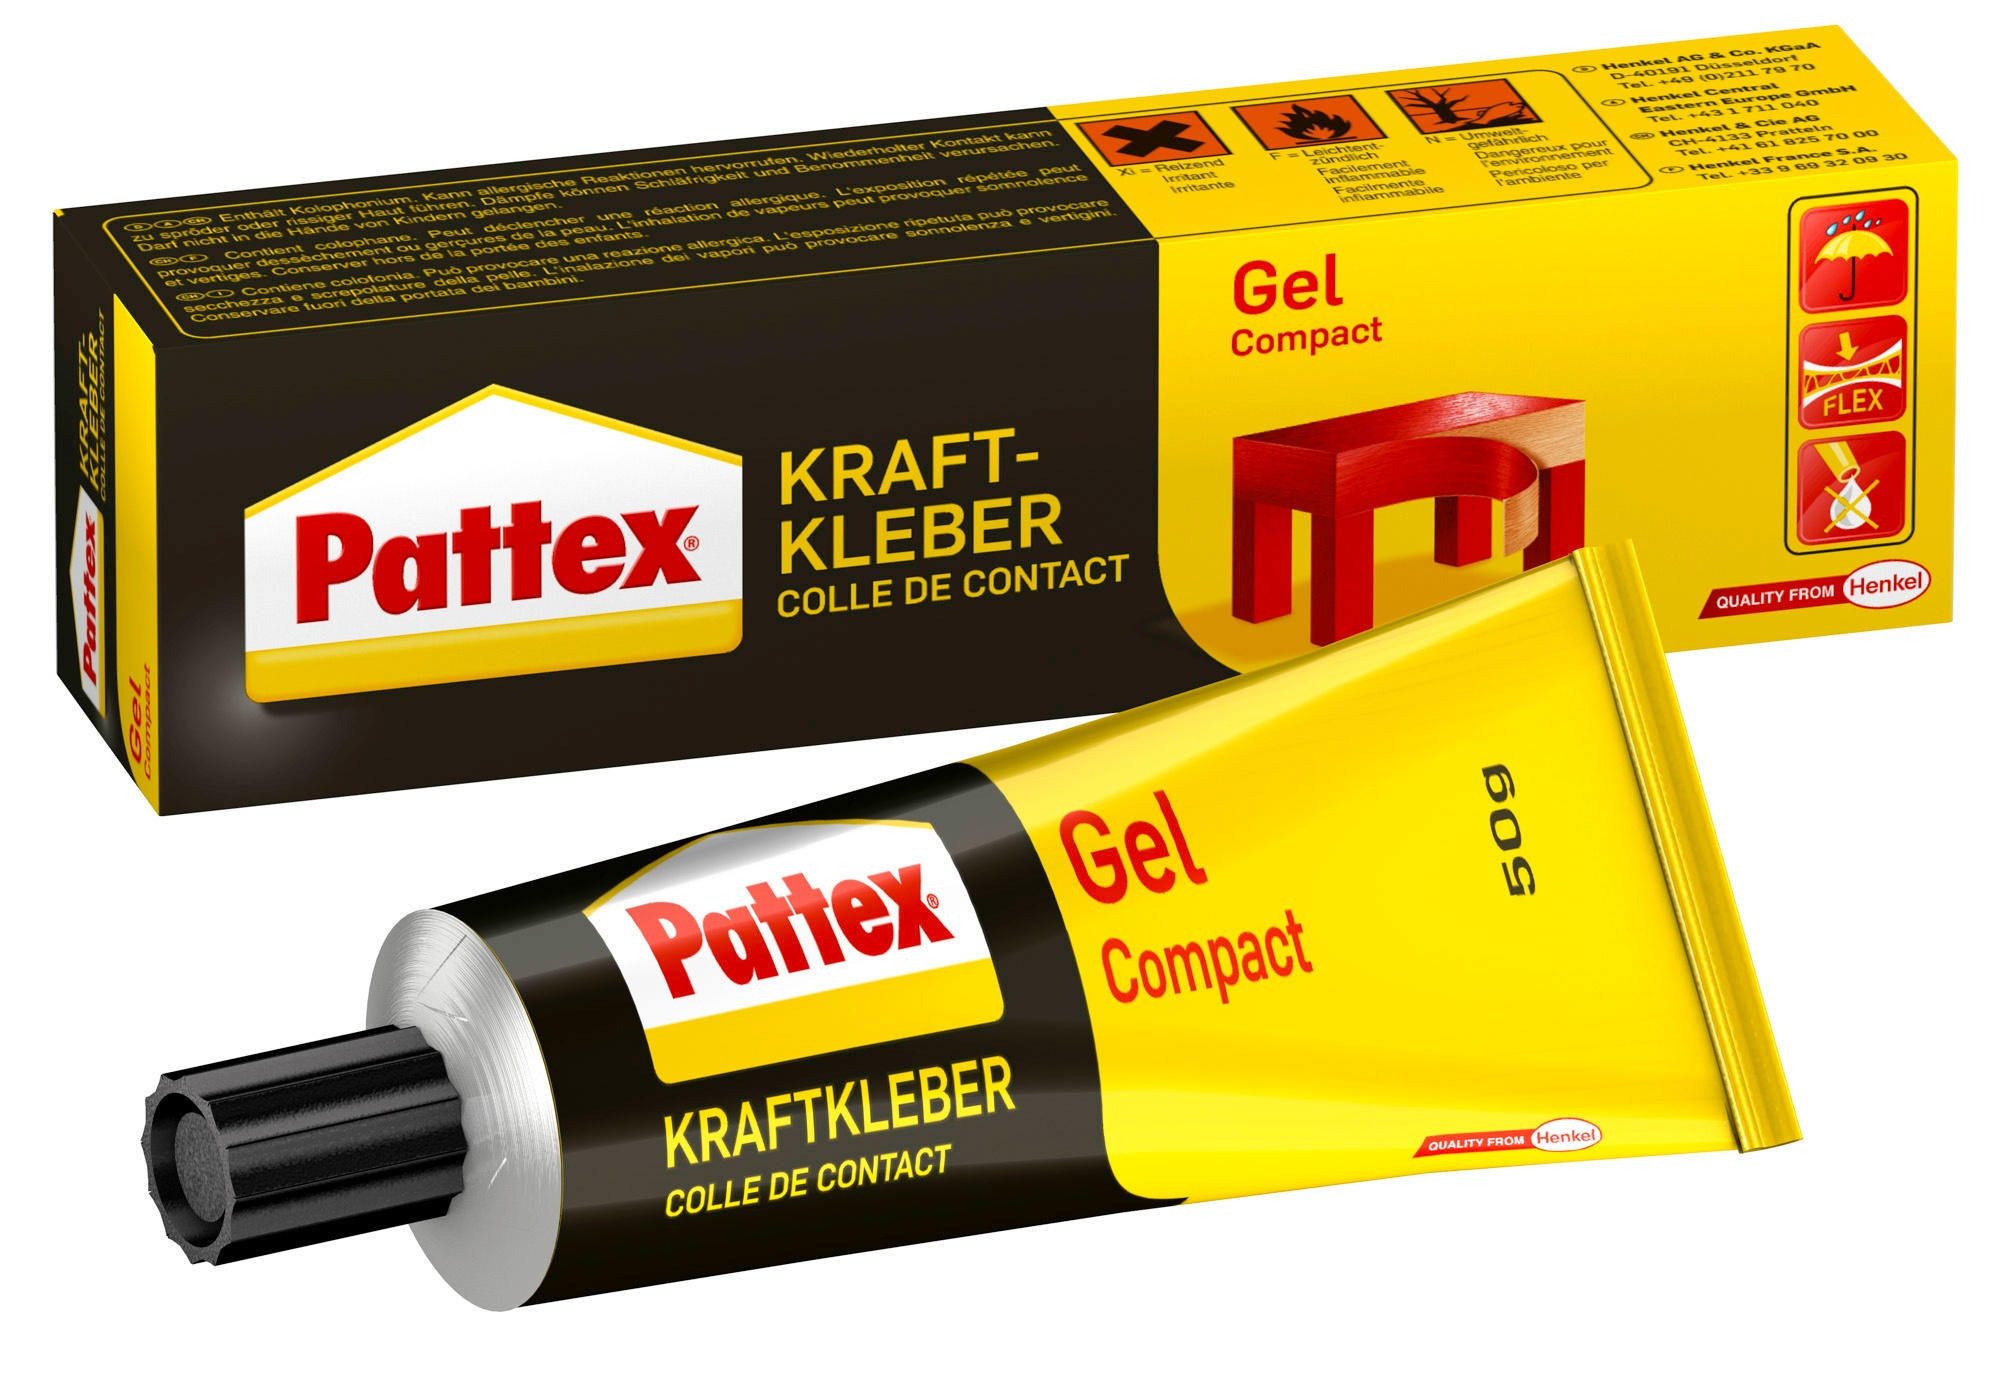 Pattex Kraftkleber Gel Compact, 50 g